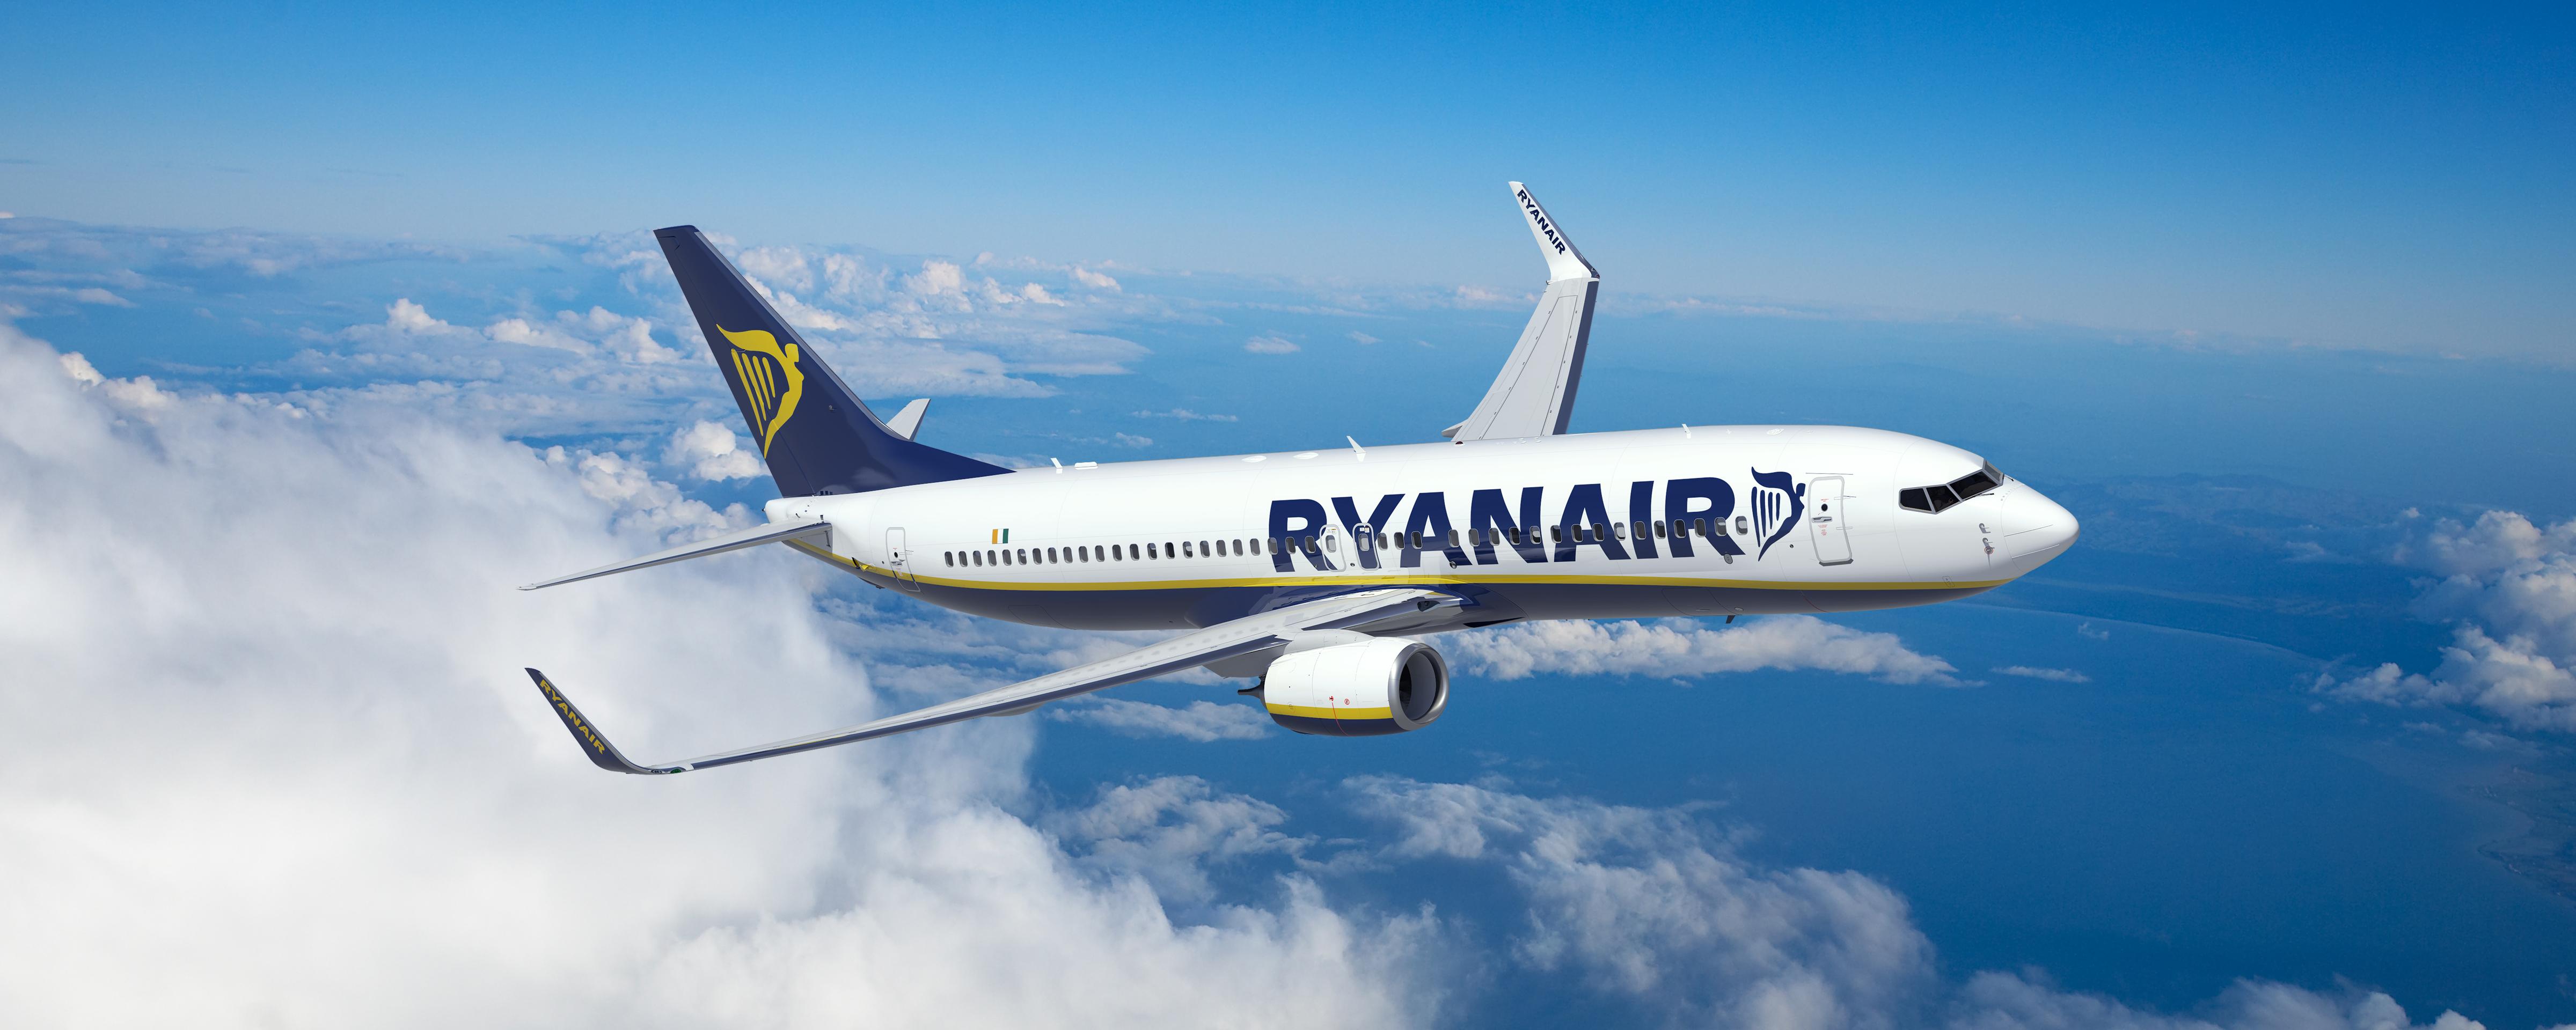 Αιχμές από την Ryanair κατά της κυβέρνησης